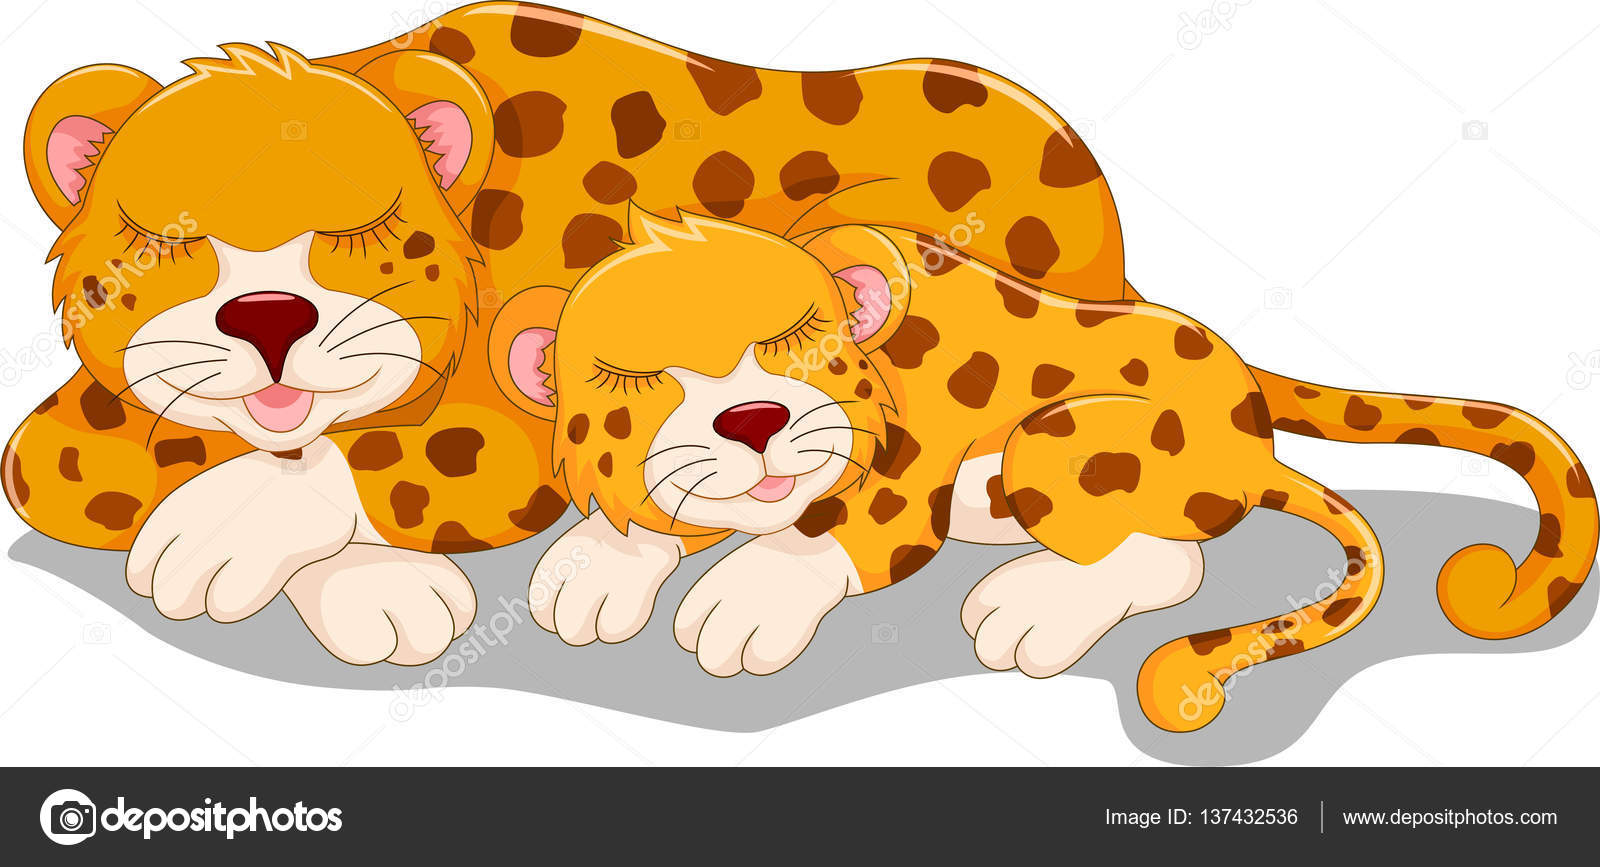 Cheetah cartoon Stock Photos, Royalty Free Cheetah cartoon Images |  Depositphotos